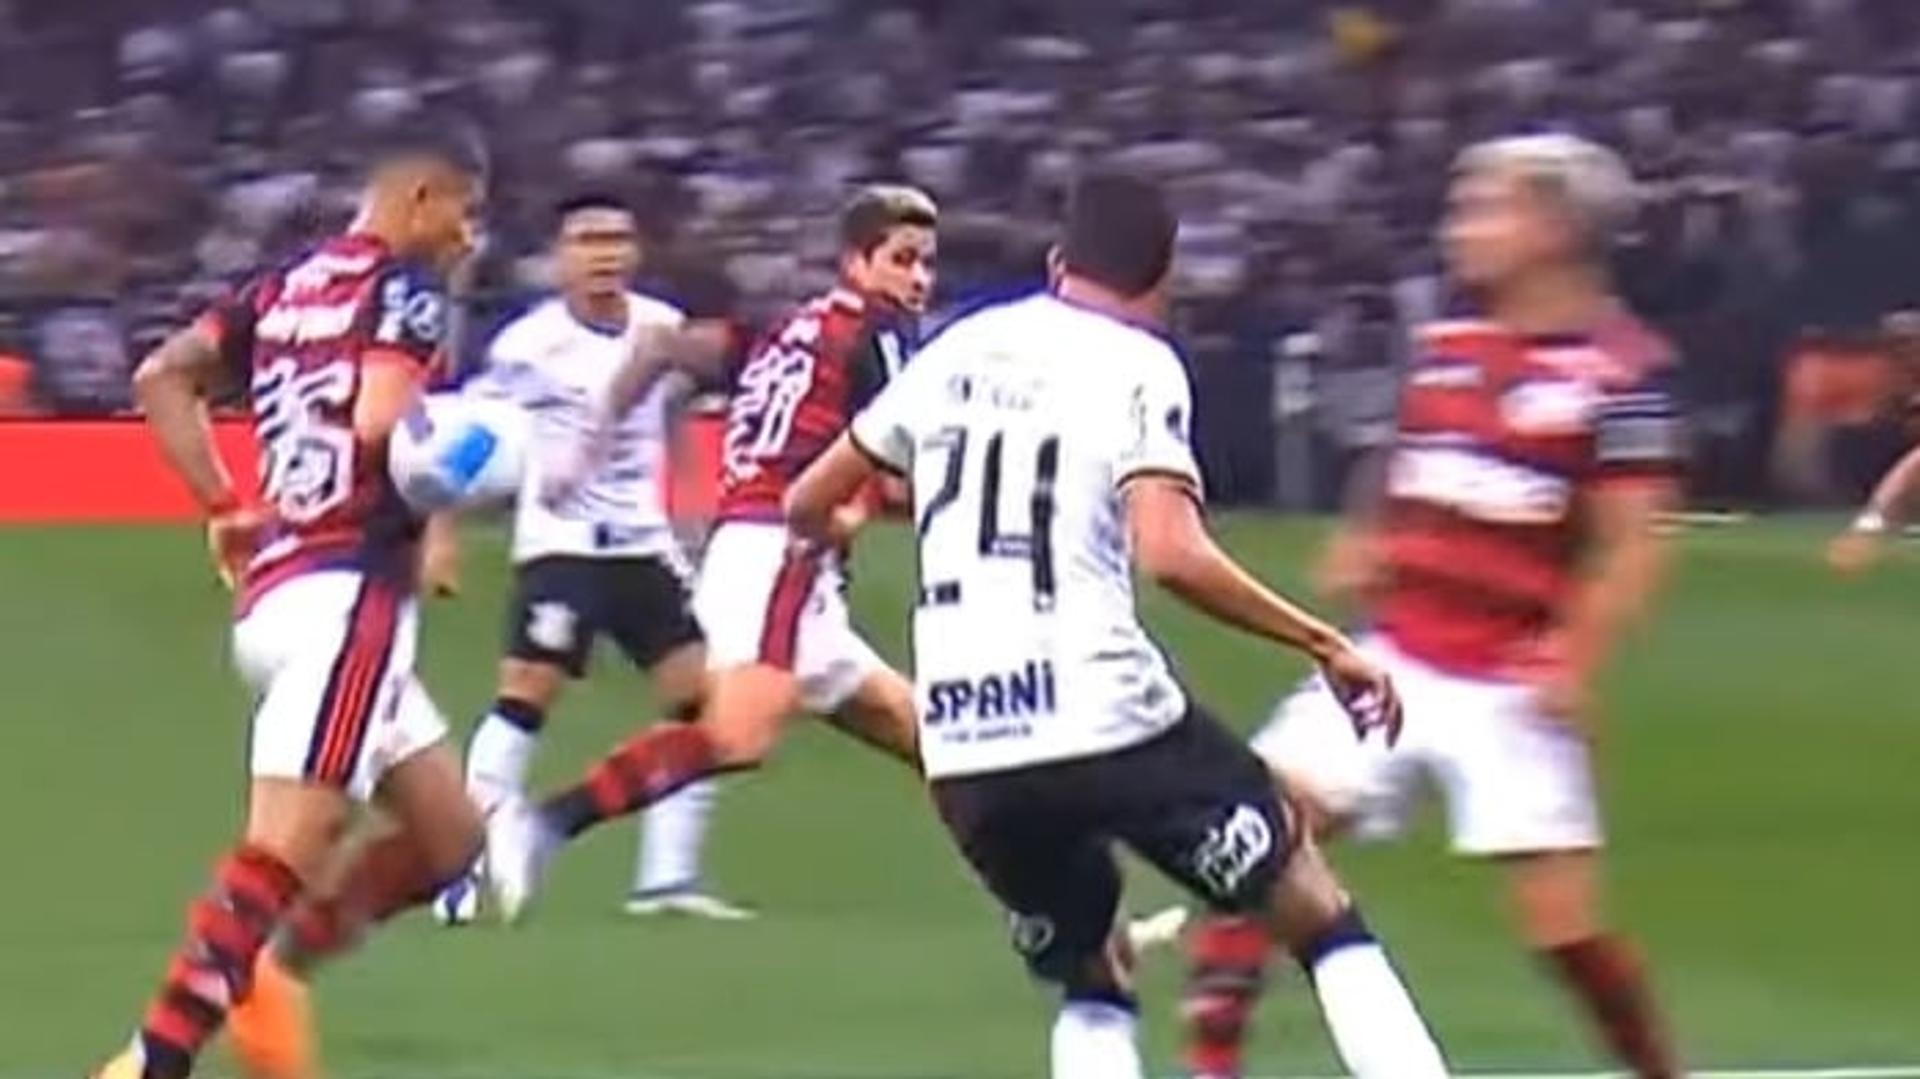 Corinthians x Flamengo - mão João Gomes